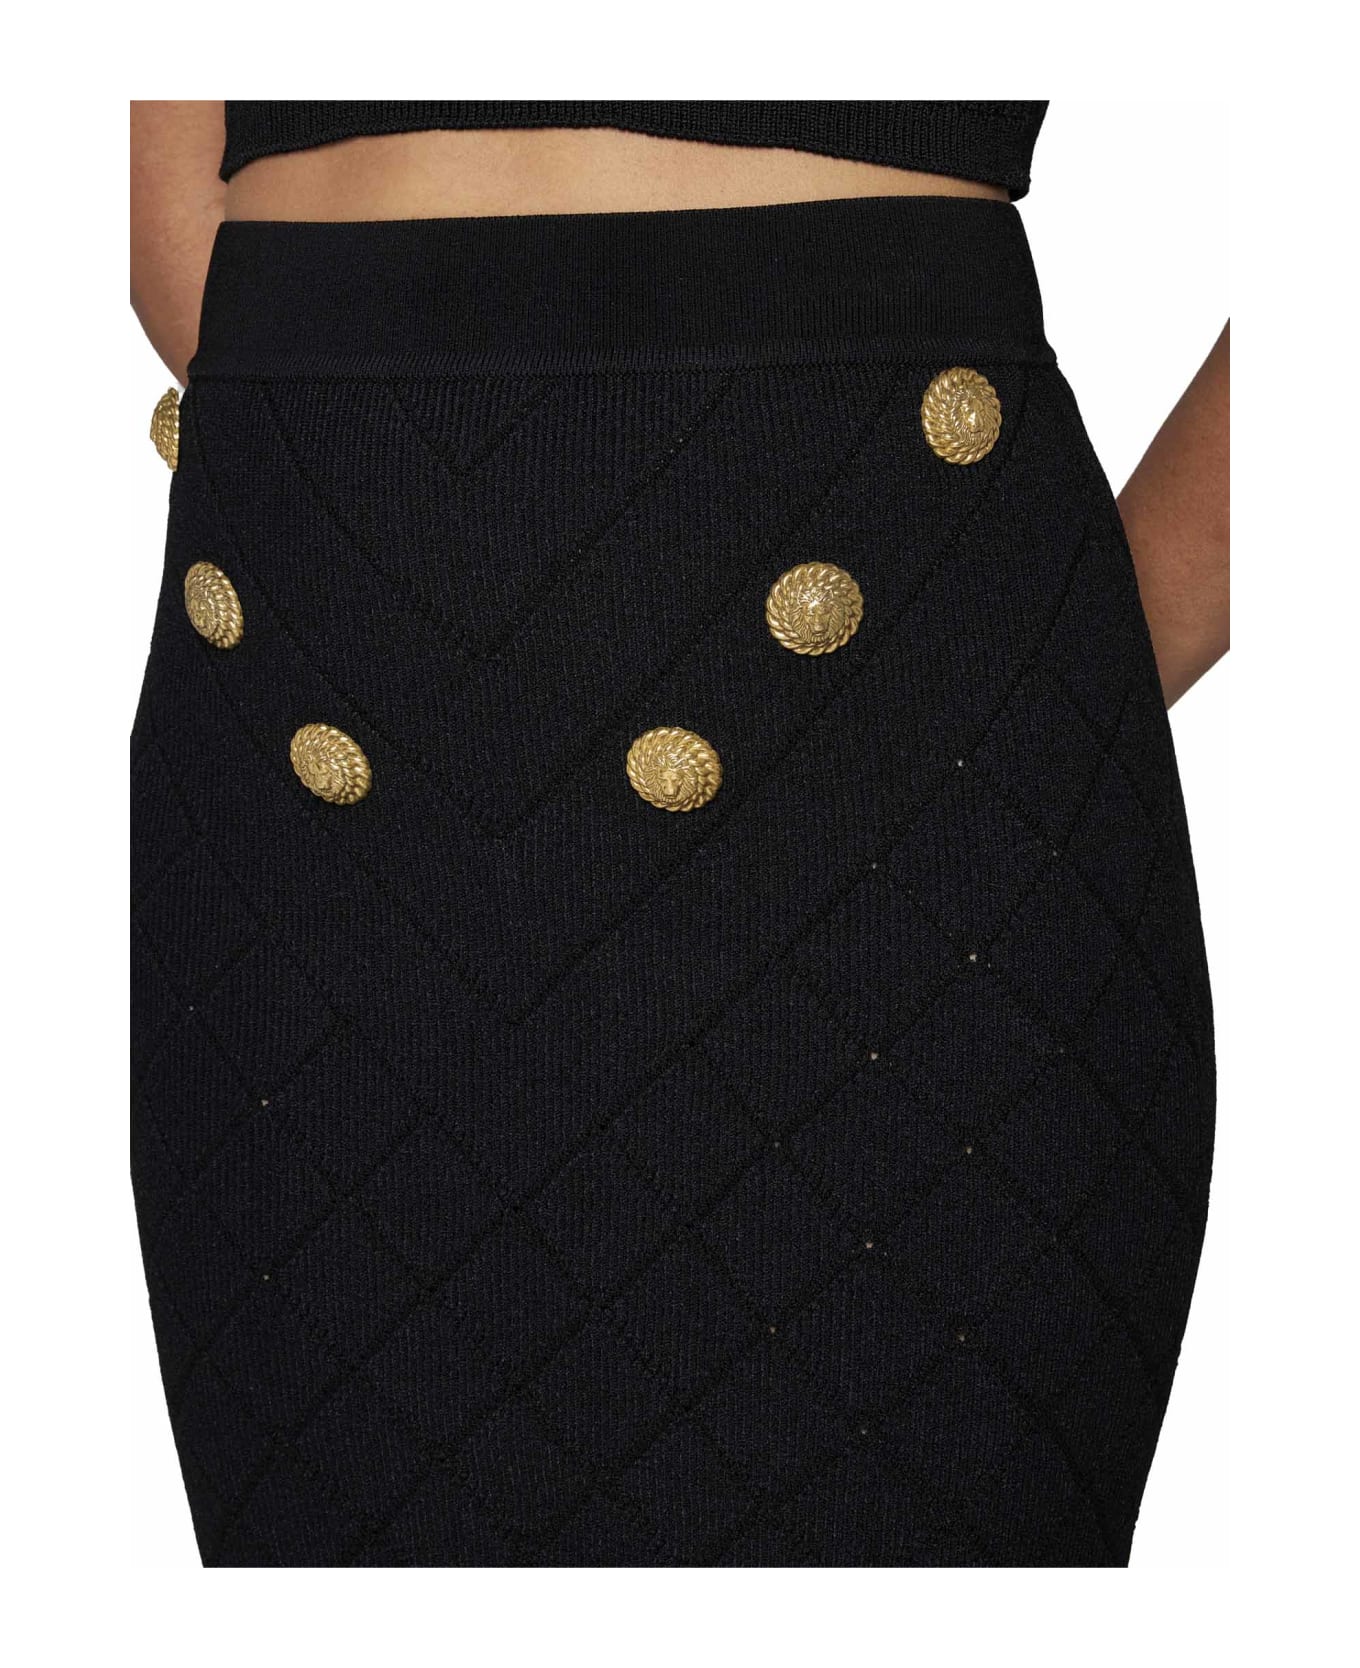 Balmain 6-button Knit Skirt - Black